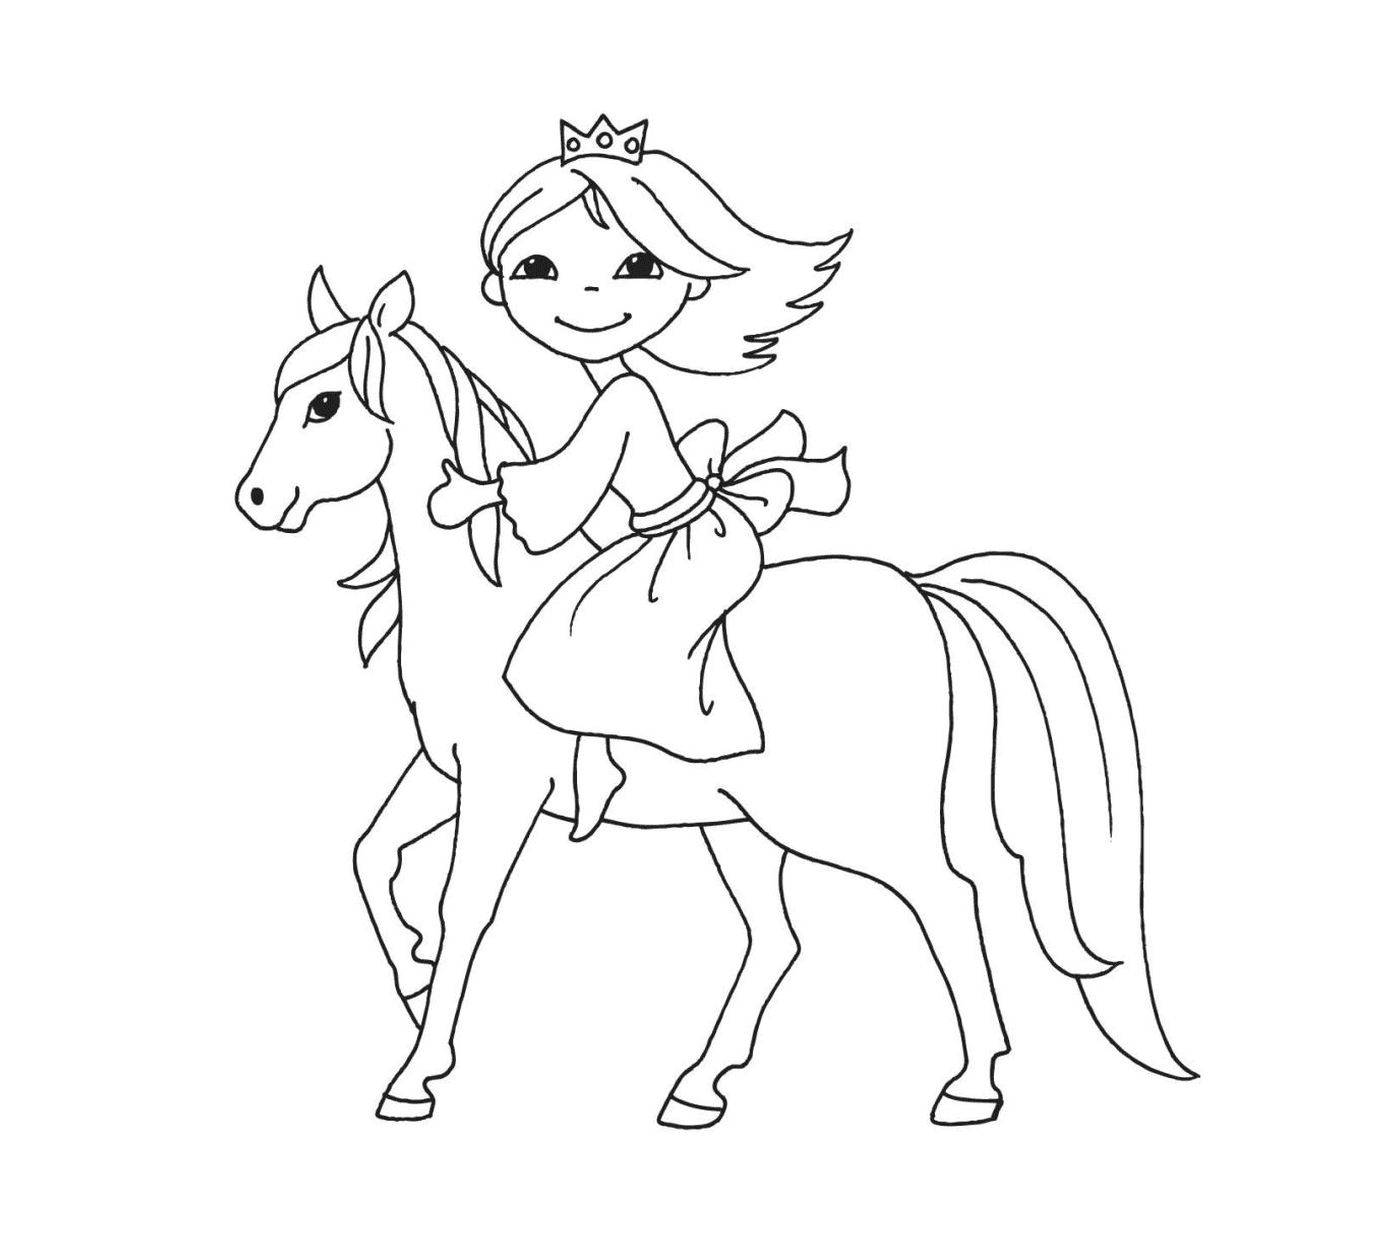  Принцесса, ездящая на своей прекрасной лошади 